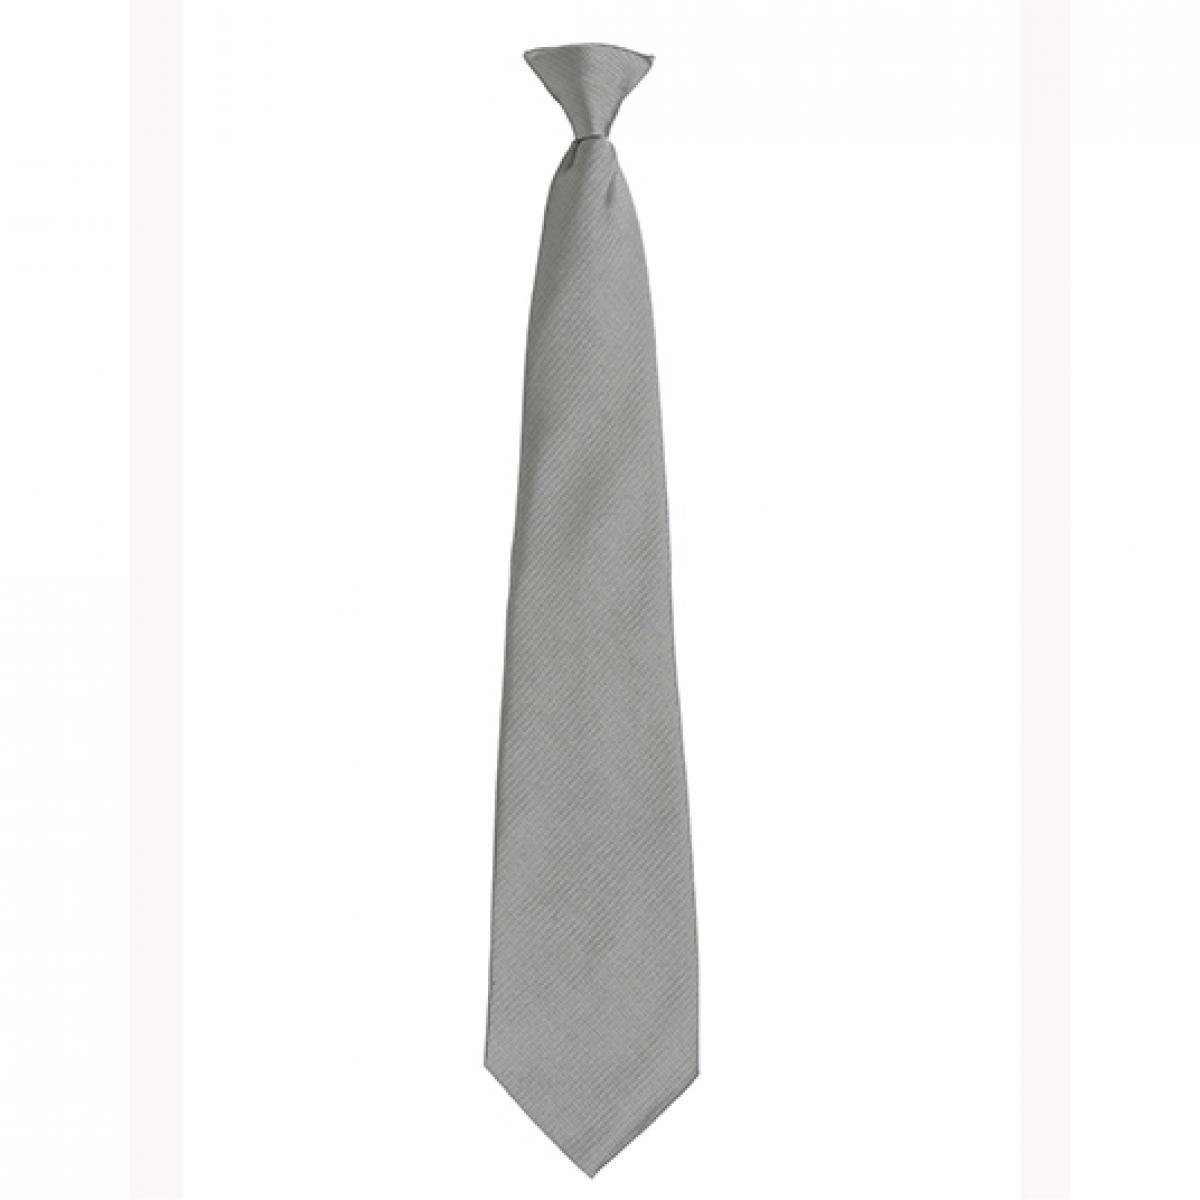 Hersteller: Premier Workwear Herstellernummer: PR785 Artikelbezeichnung: ´Colours´ Fashion Clip Tie Farbe: Pale Grey (Silver) (ca. Pantone 420 C)